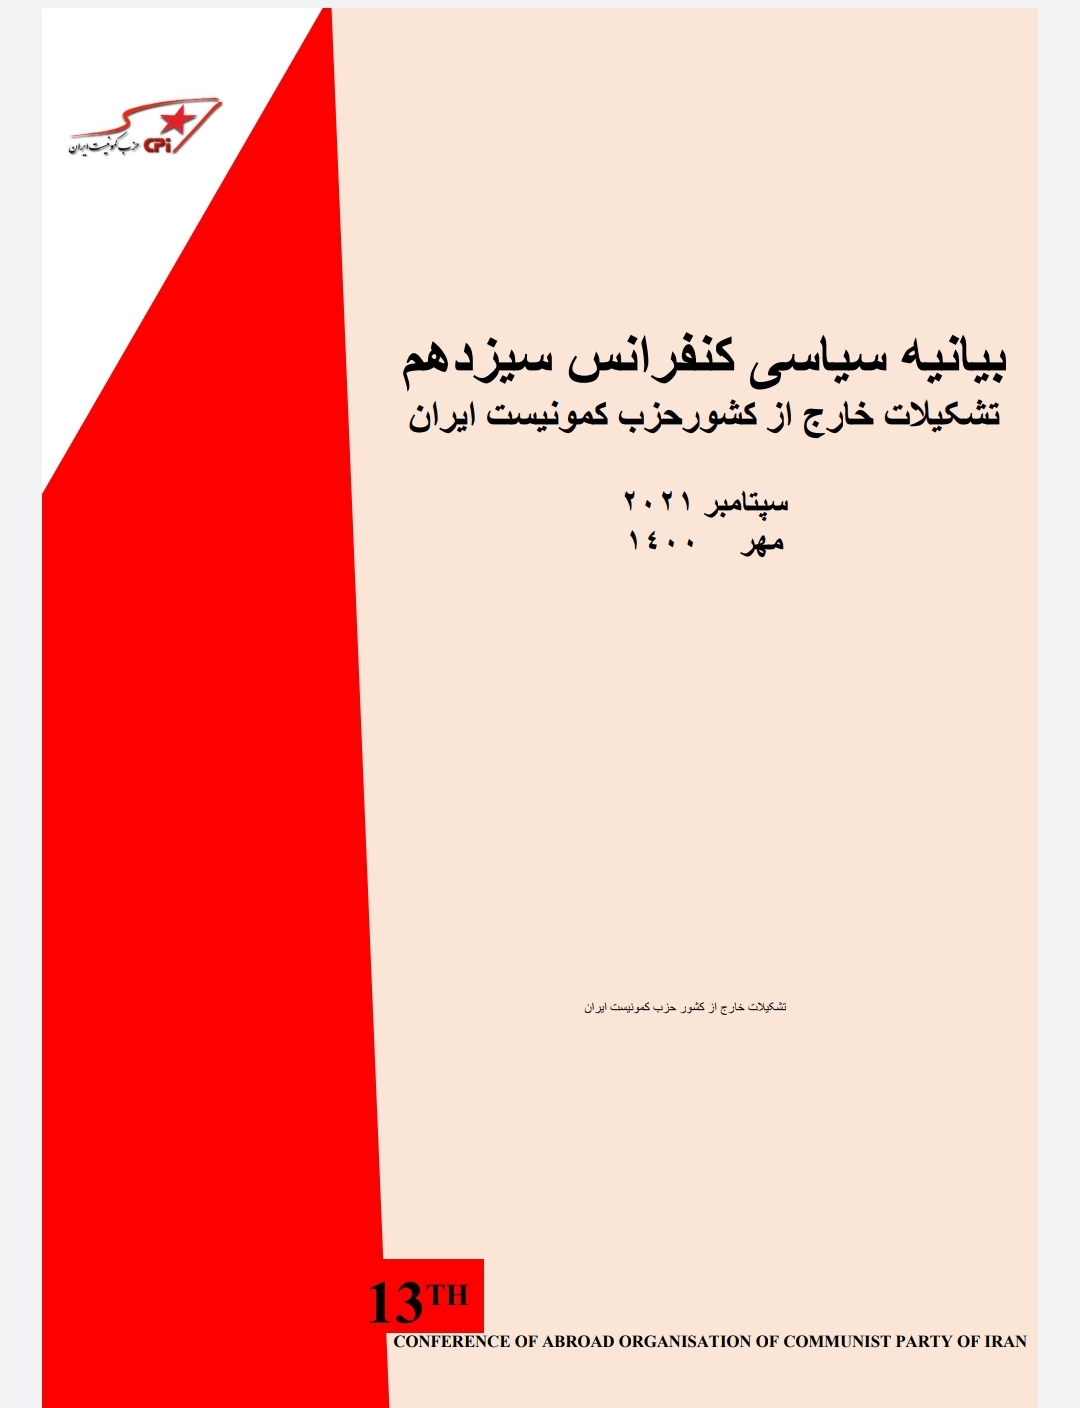 بیانیه سیاسی کنفرانس سیزدهم تشکیلات خارج از کشور حزب کمونیست ایران